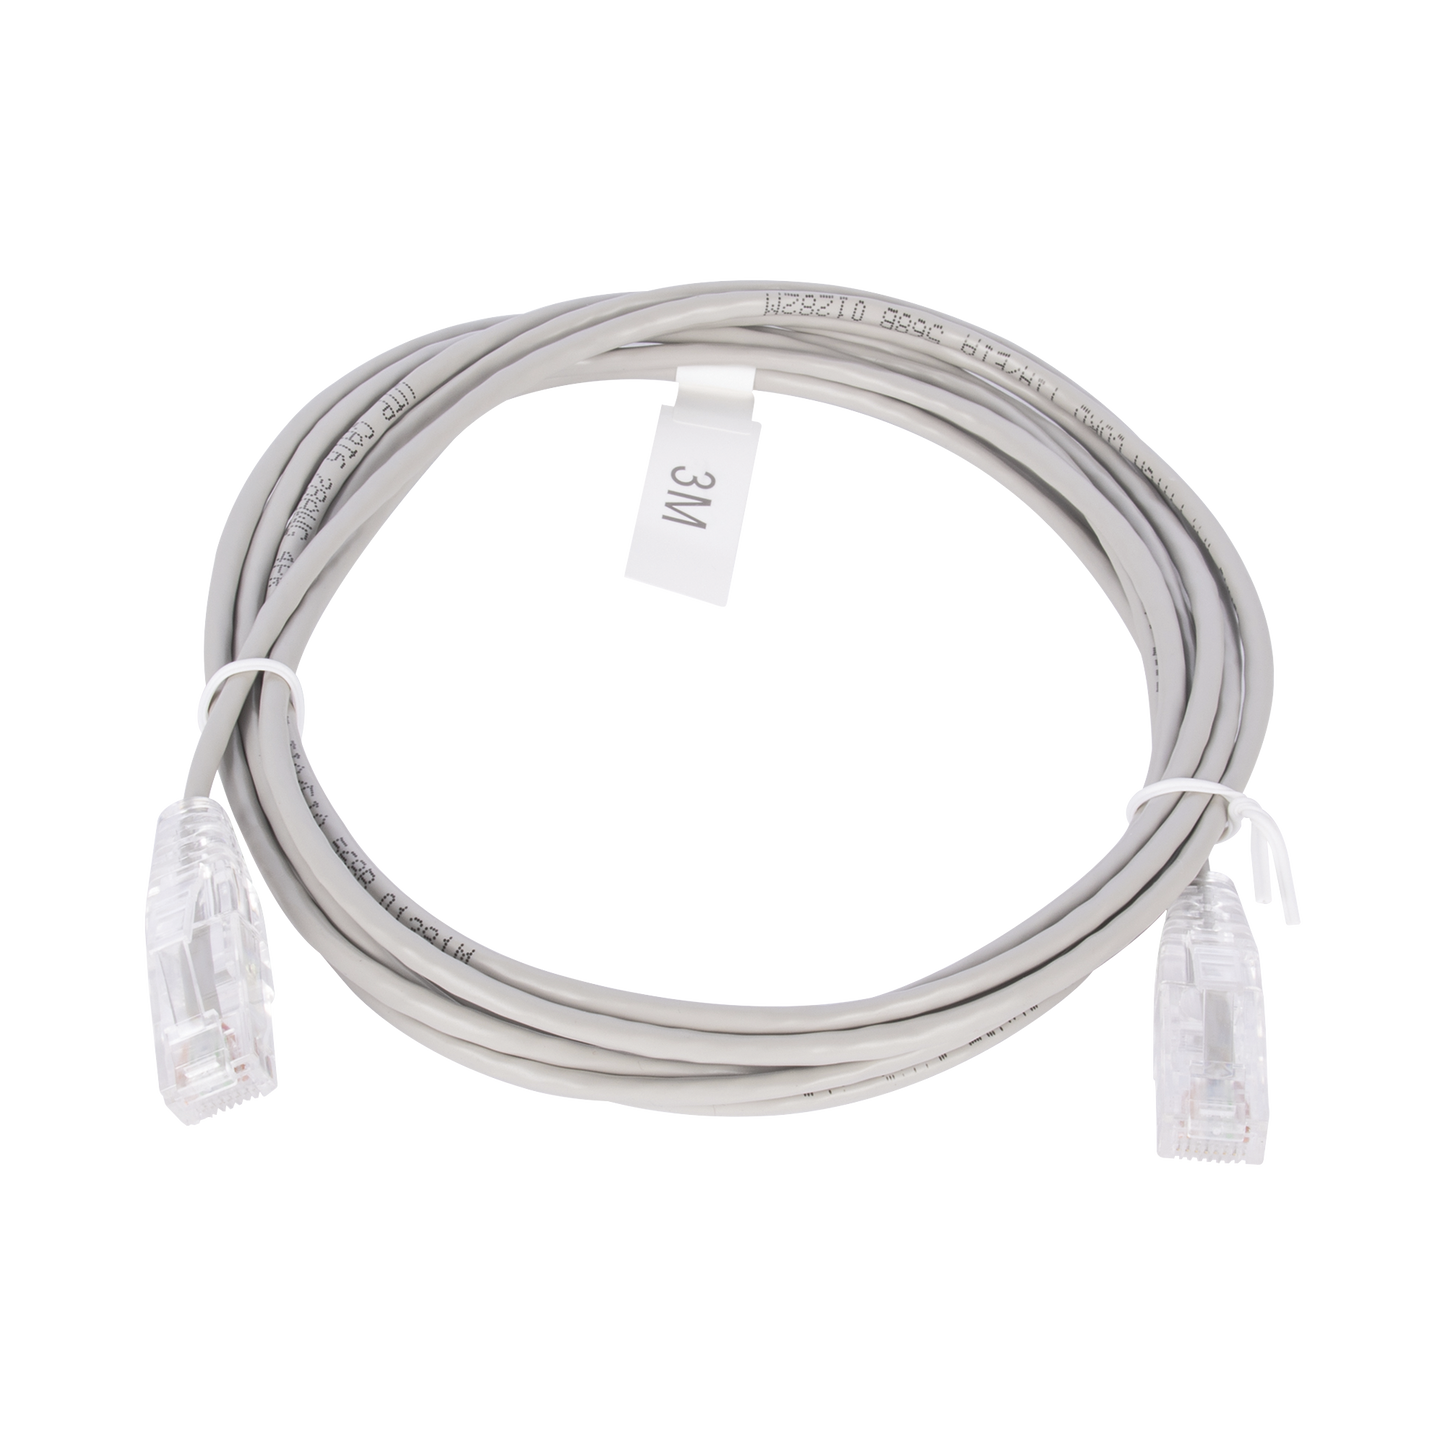 Cable de Parcheo Slim UTP Cat6 - 3 m Gris Diámetro Reducido (28 AWG)